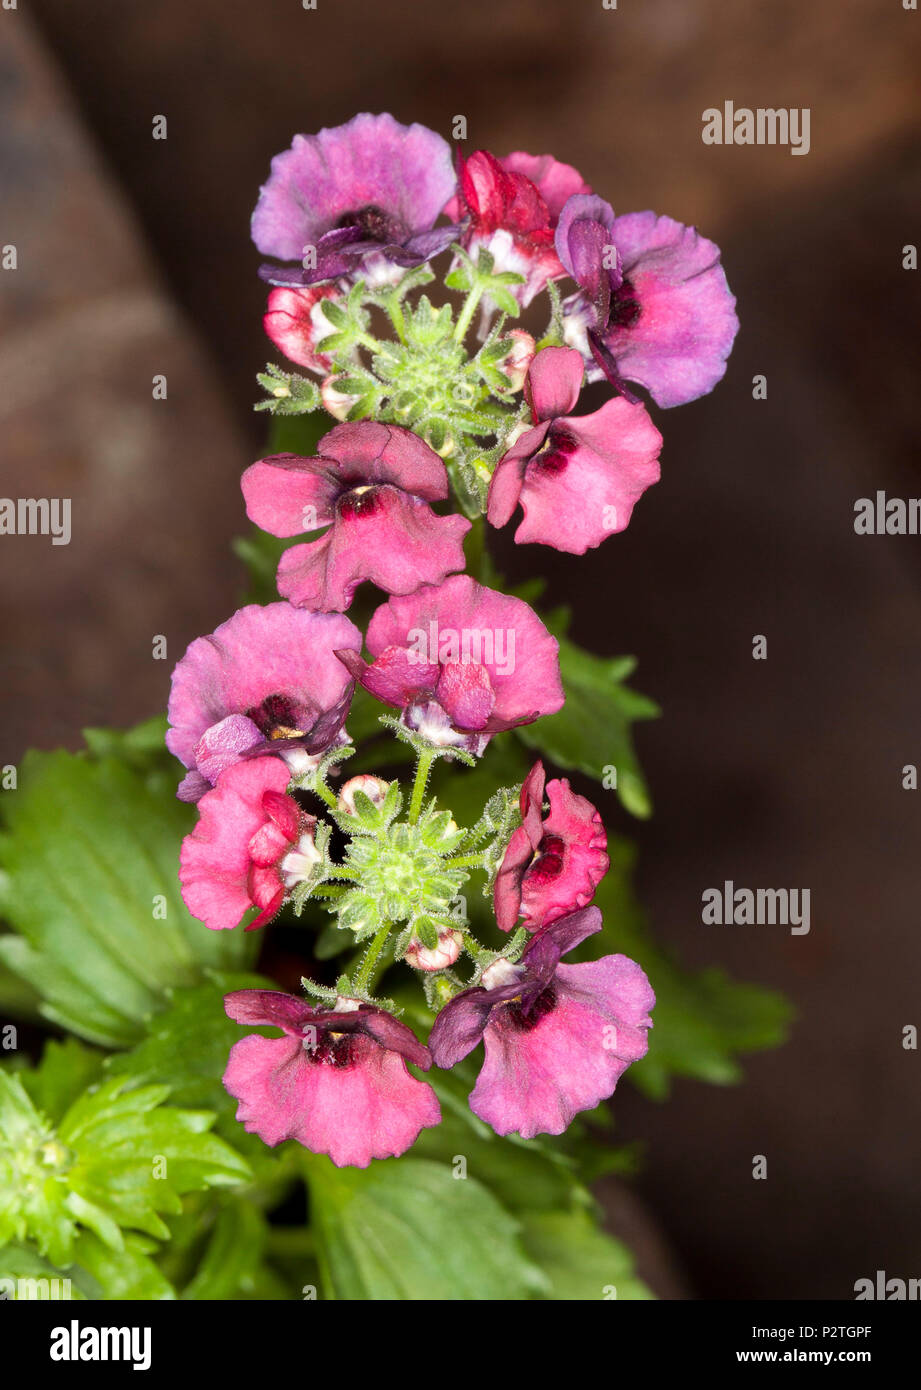 Cluster mit leuchtenden rosa-roten Blüten und helle grüne Blätter der garten anlage Nemesia fruticans' Obst Prickelt' auf dunklem Hintergrund Stockfoto